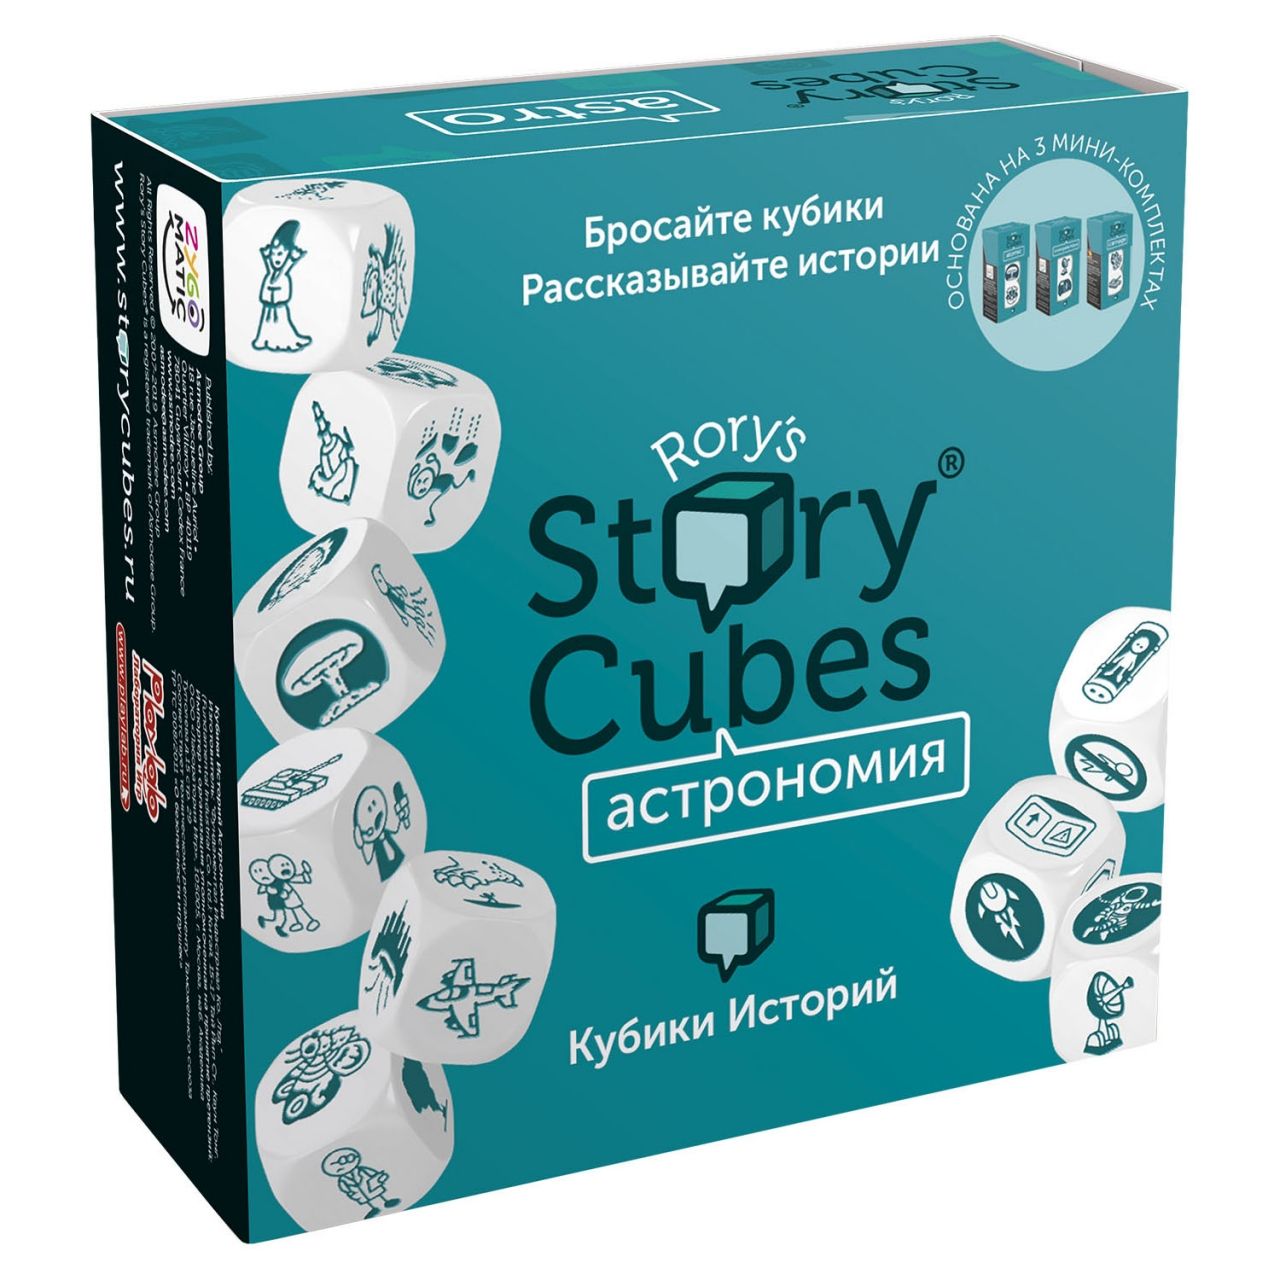 Настольная игра RORYS STORY CUBES RSC31 кубики историй Астрономия настольная игра кубики историй действия